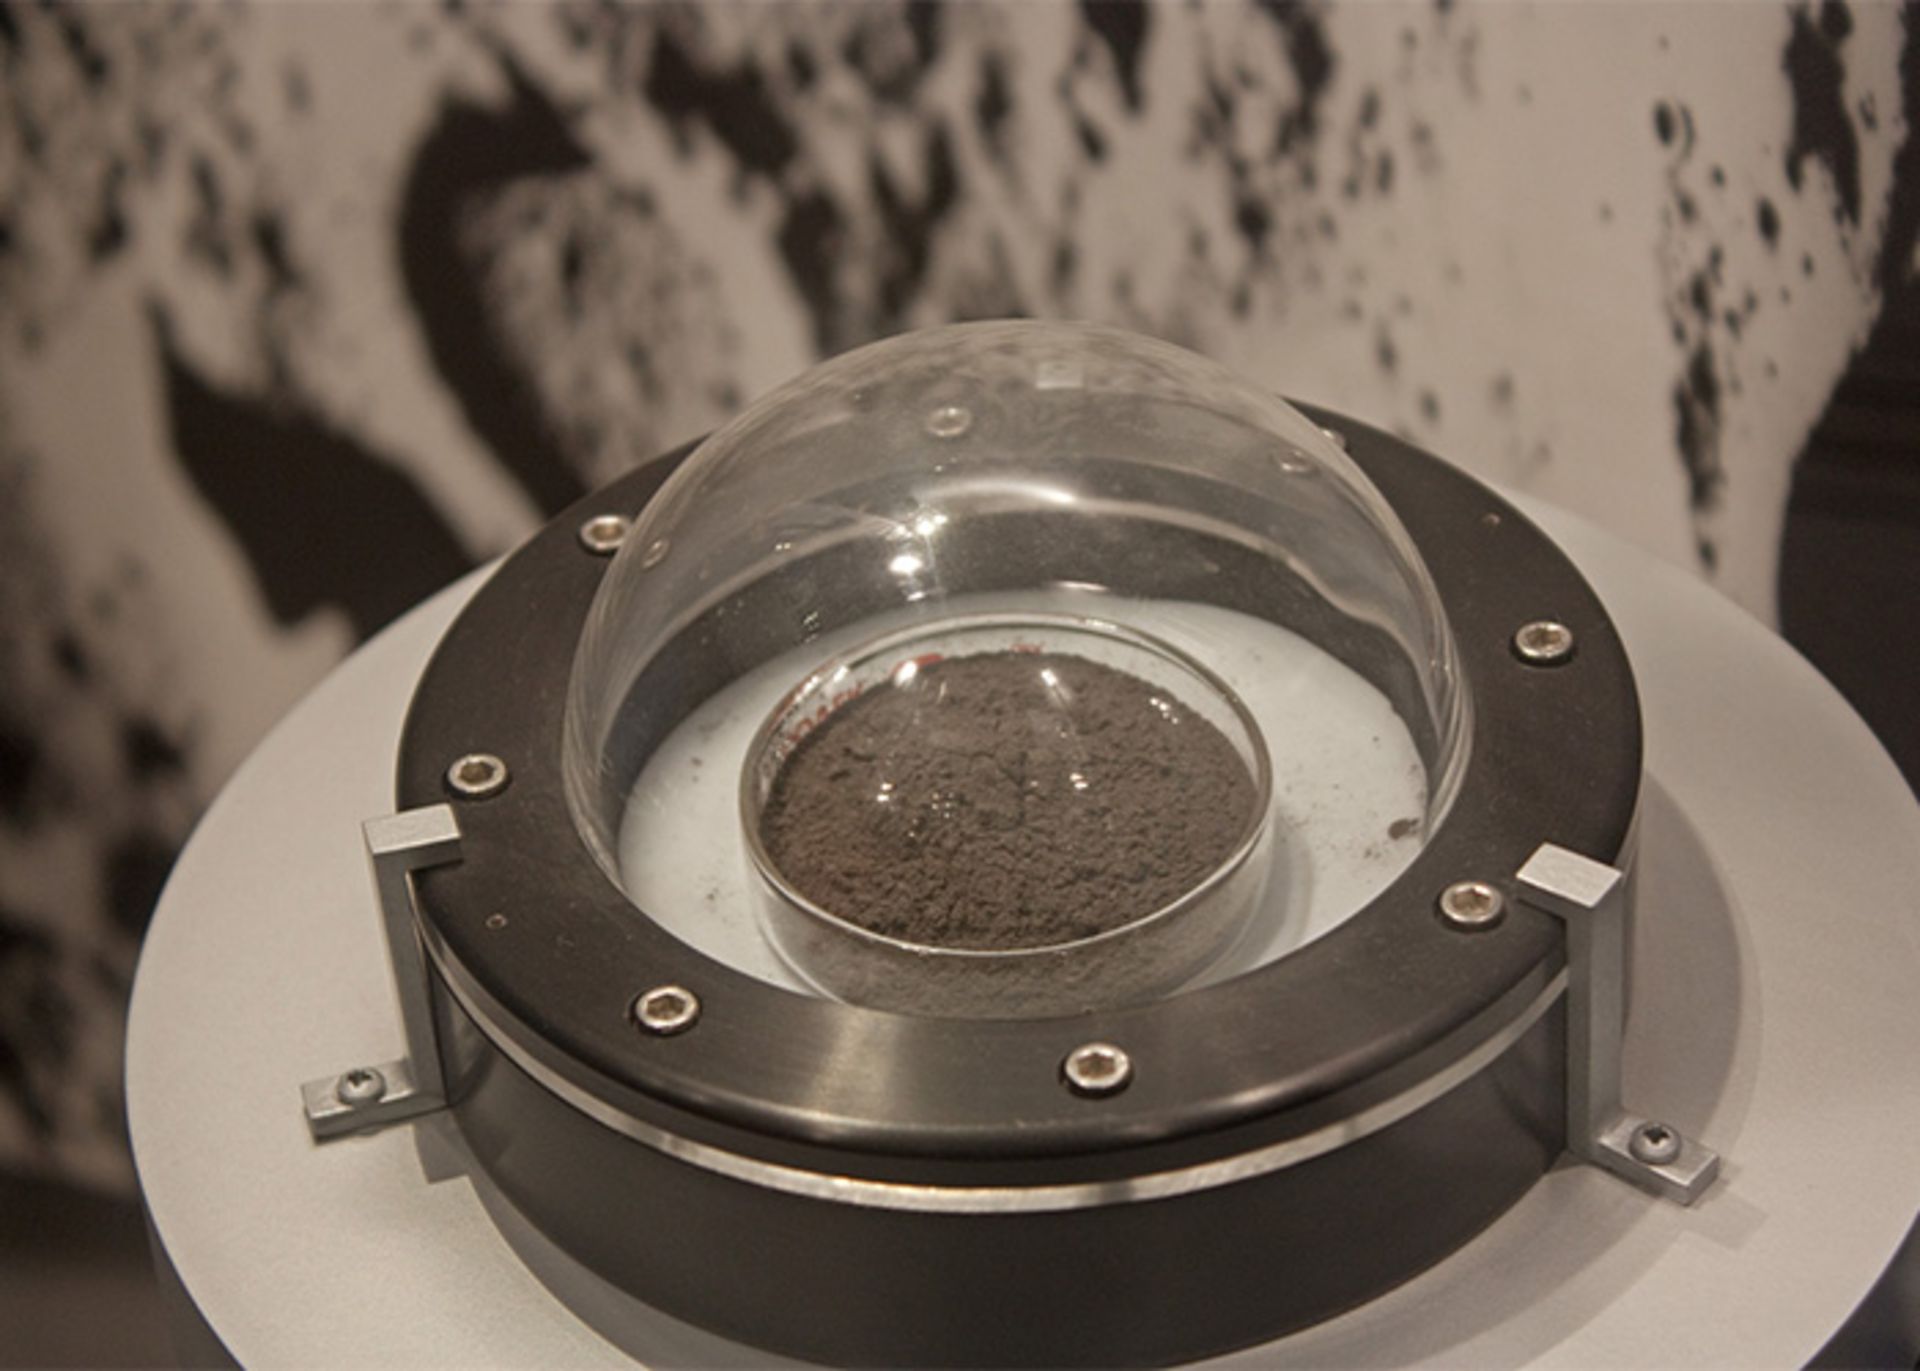 مرجع متخصصين ايران lunar soil sample